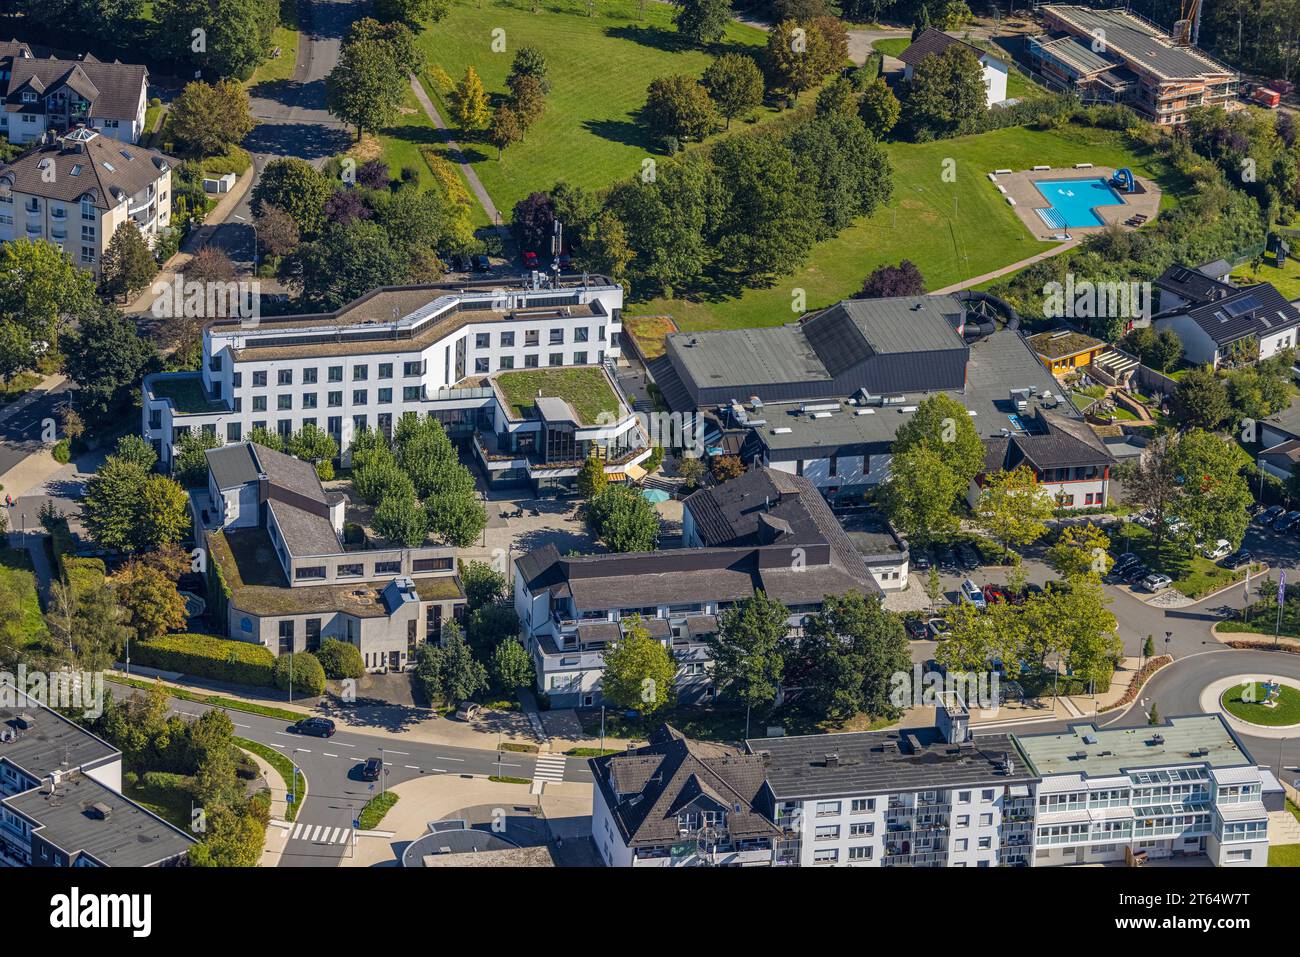 Vista aerea, municipio, stazione di polizia, piscina avventura Finto e piscina per bambini, AM Markt, Finnentrop, Sauerland, Renania settentrionale-Vestfalia, Germania, Ey Foto Stock